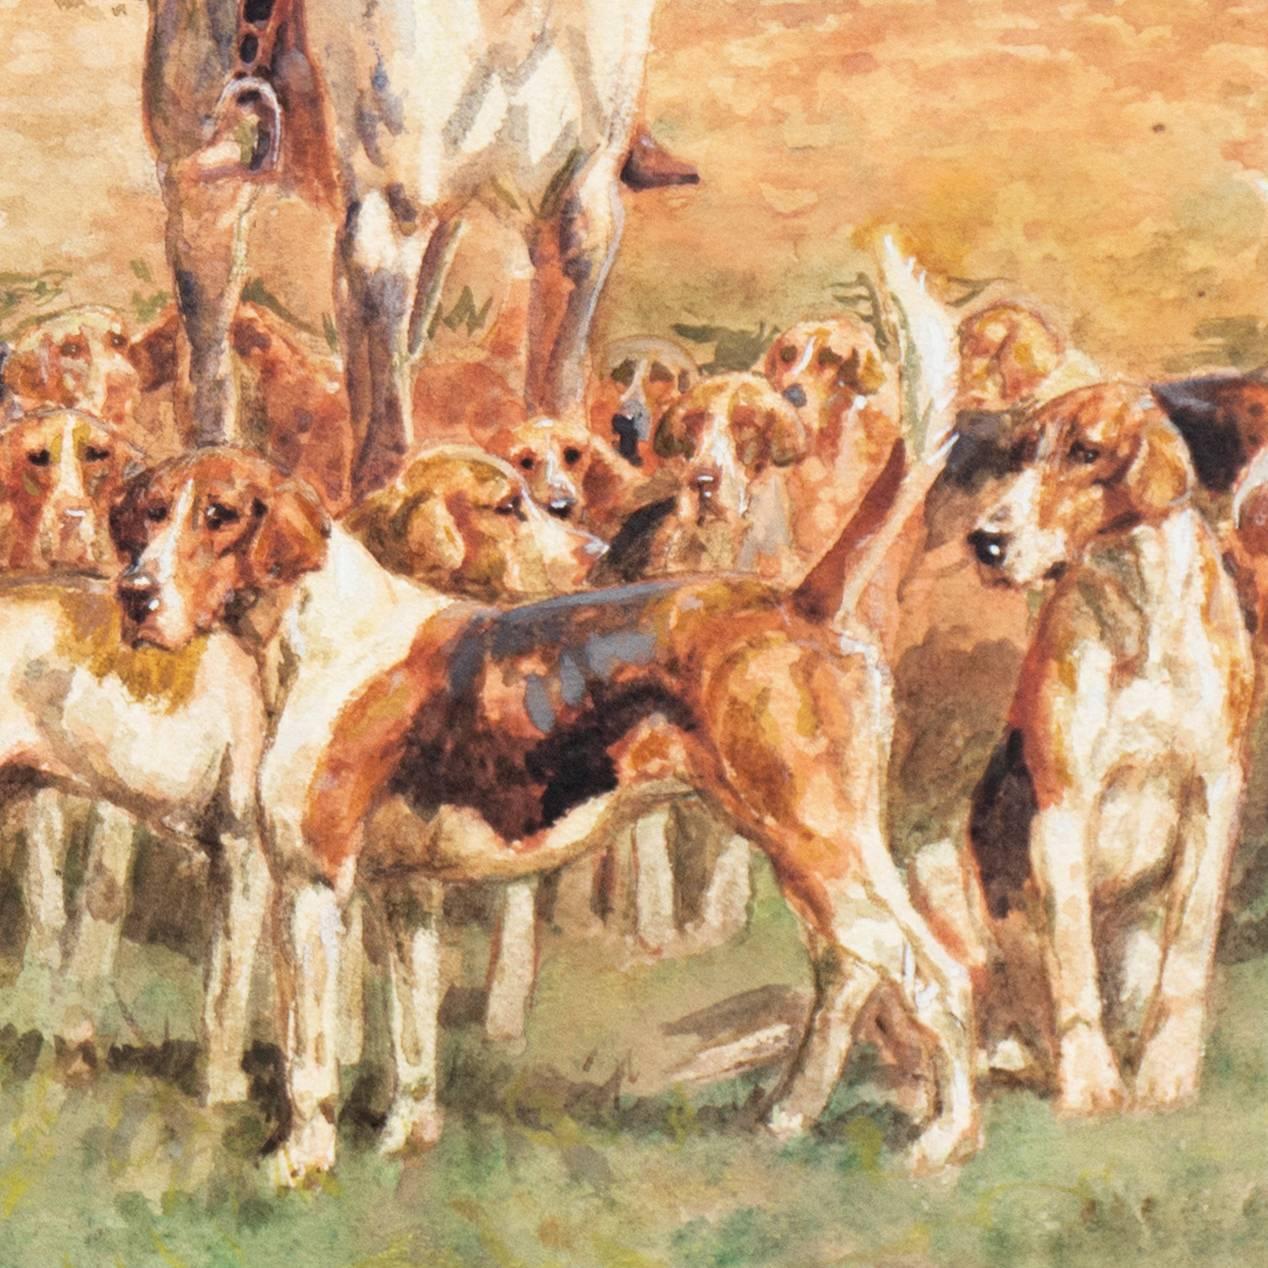 « The Meet », chasse au renard de l'époque édouardienne, aquarelle équestre anglaise, chevaux et aigle - Réalisme Art par Thomas Ivester Lloyd